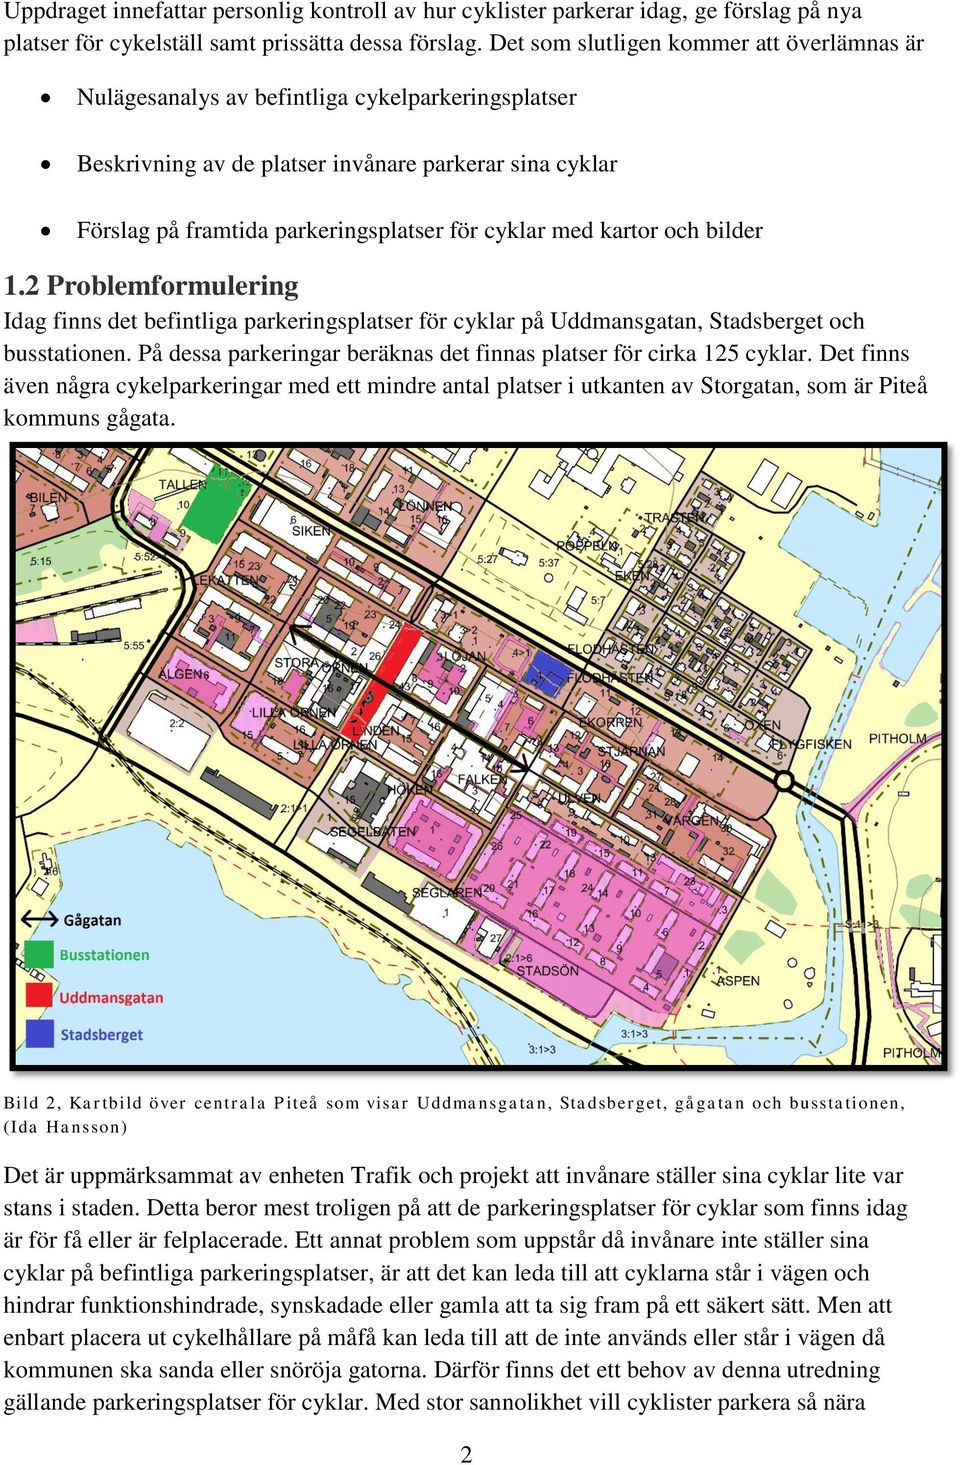 med kartor och bilder 1.2 Problemformulering Idag finns det befintliga parkeringsplatser för cyklar på Uddmansgatan, Stadsberget och busstationen.